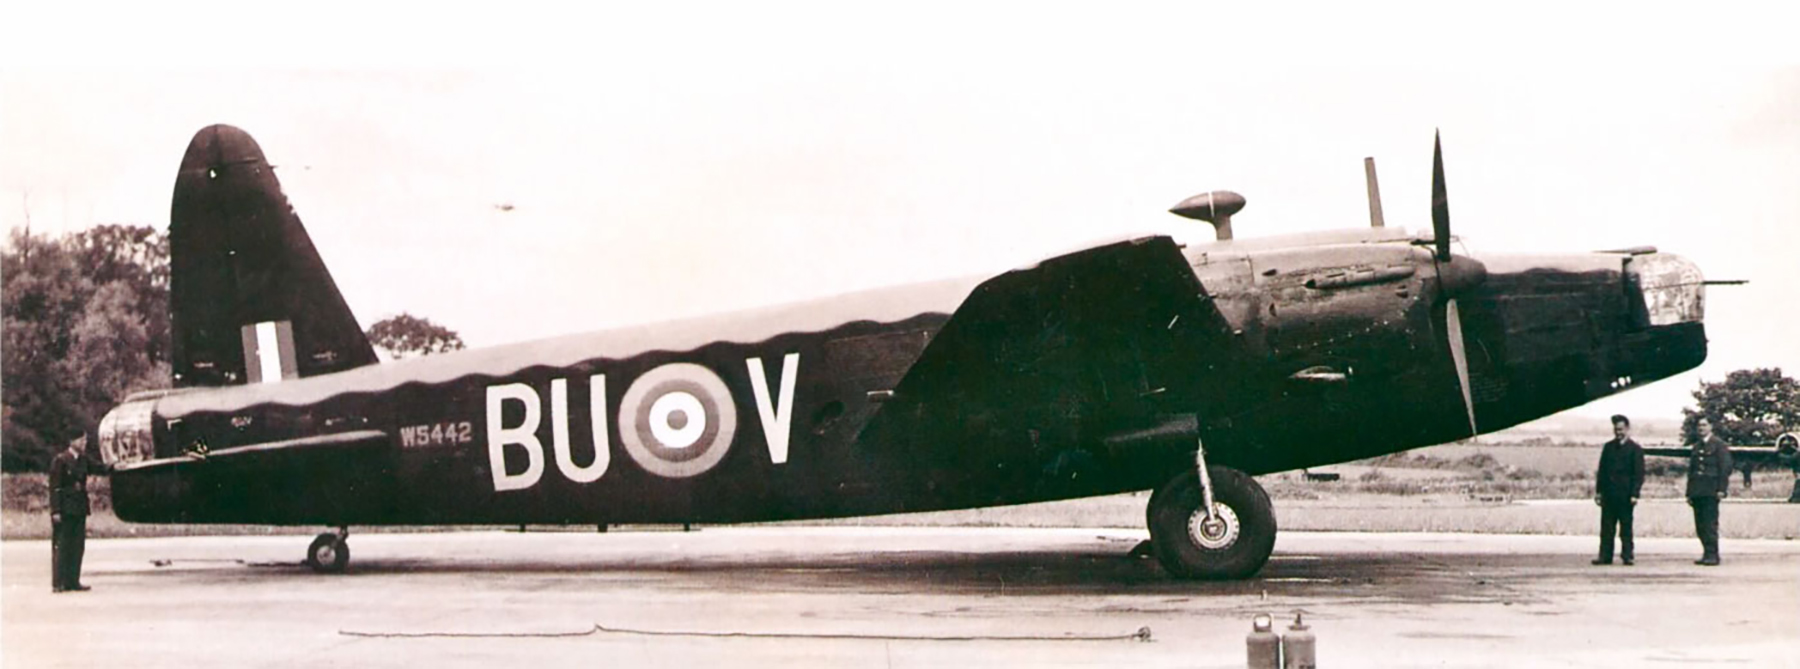 Wellington MkII RAF 214Sqn BUV W5442 then to 12Sqn lost Essen raid 10th Mar 1942 01